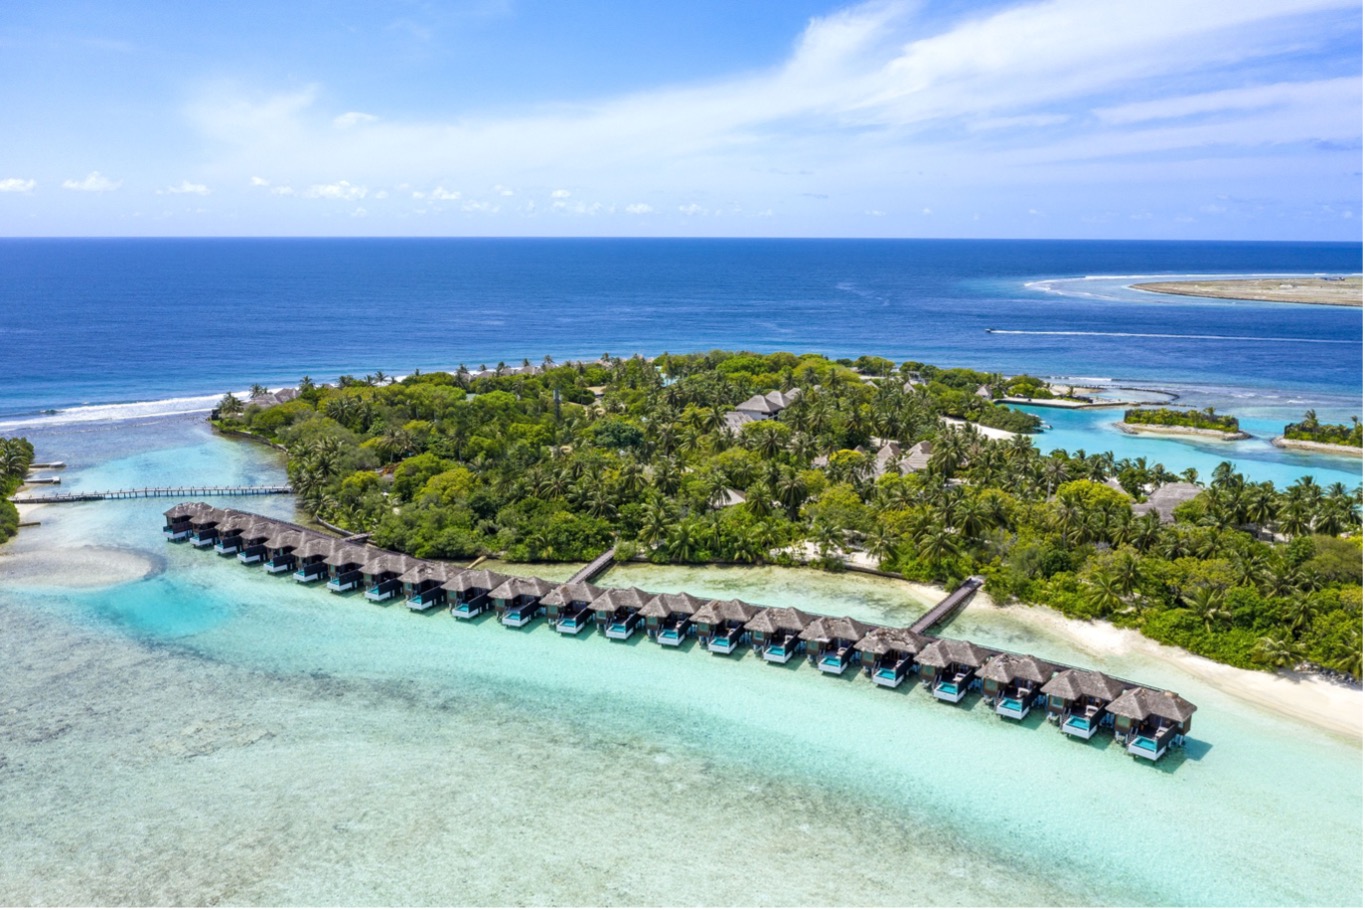 Maldives Sheraton hotels